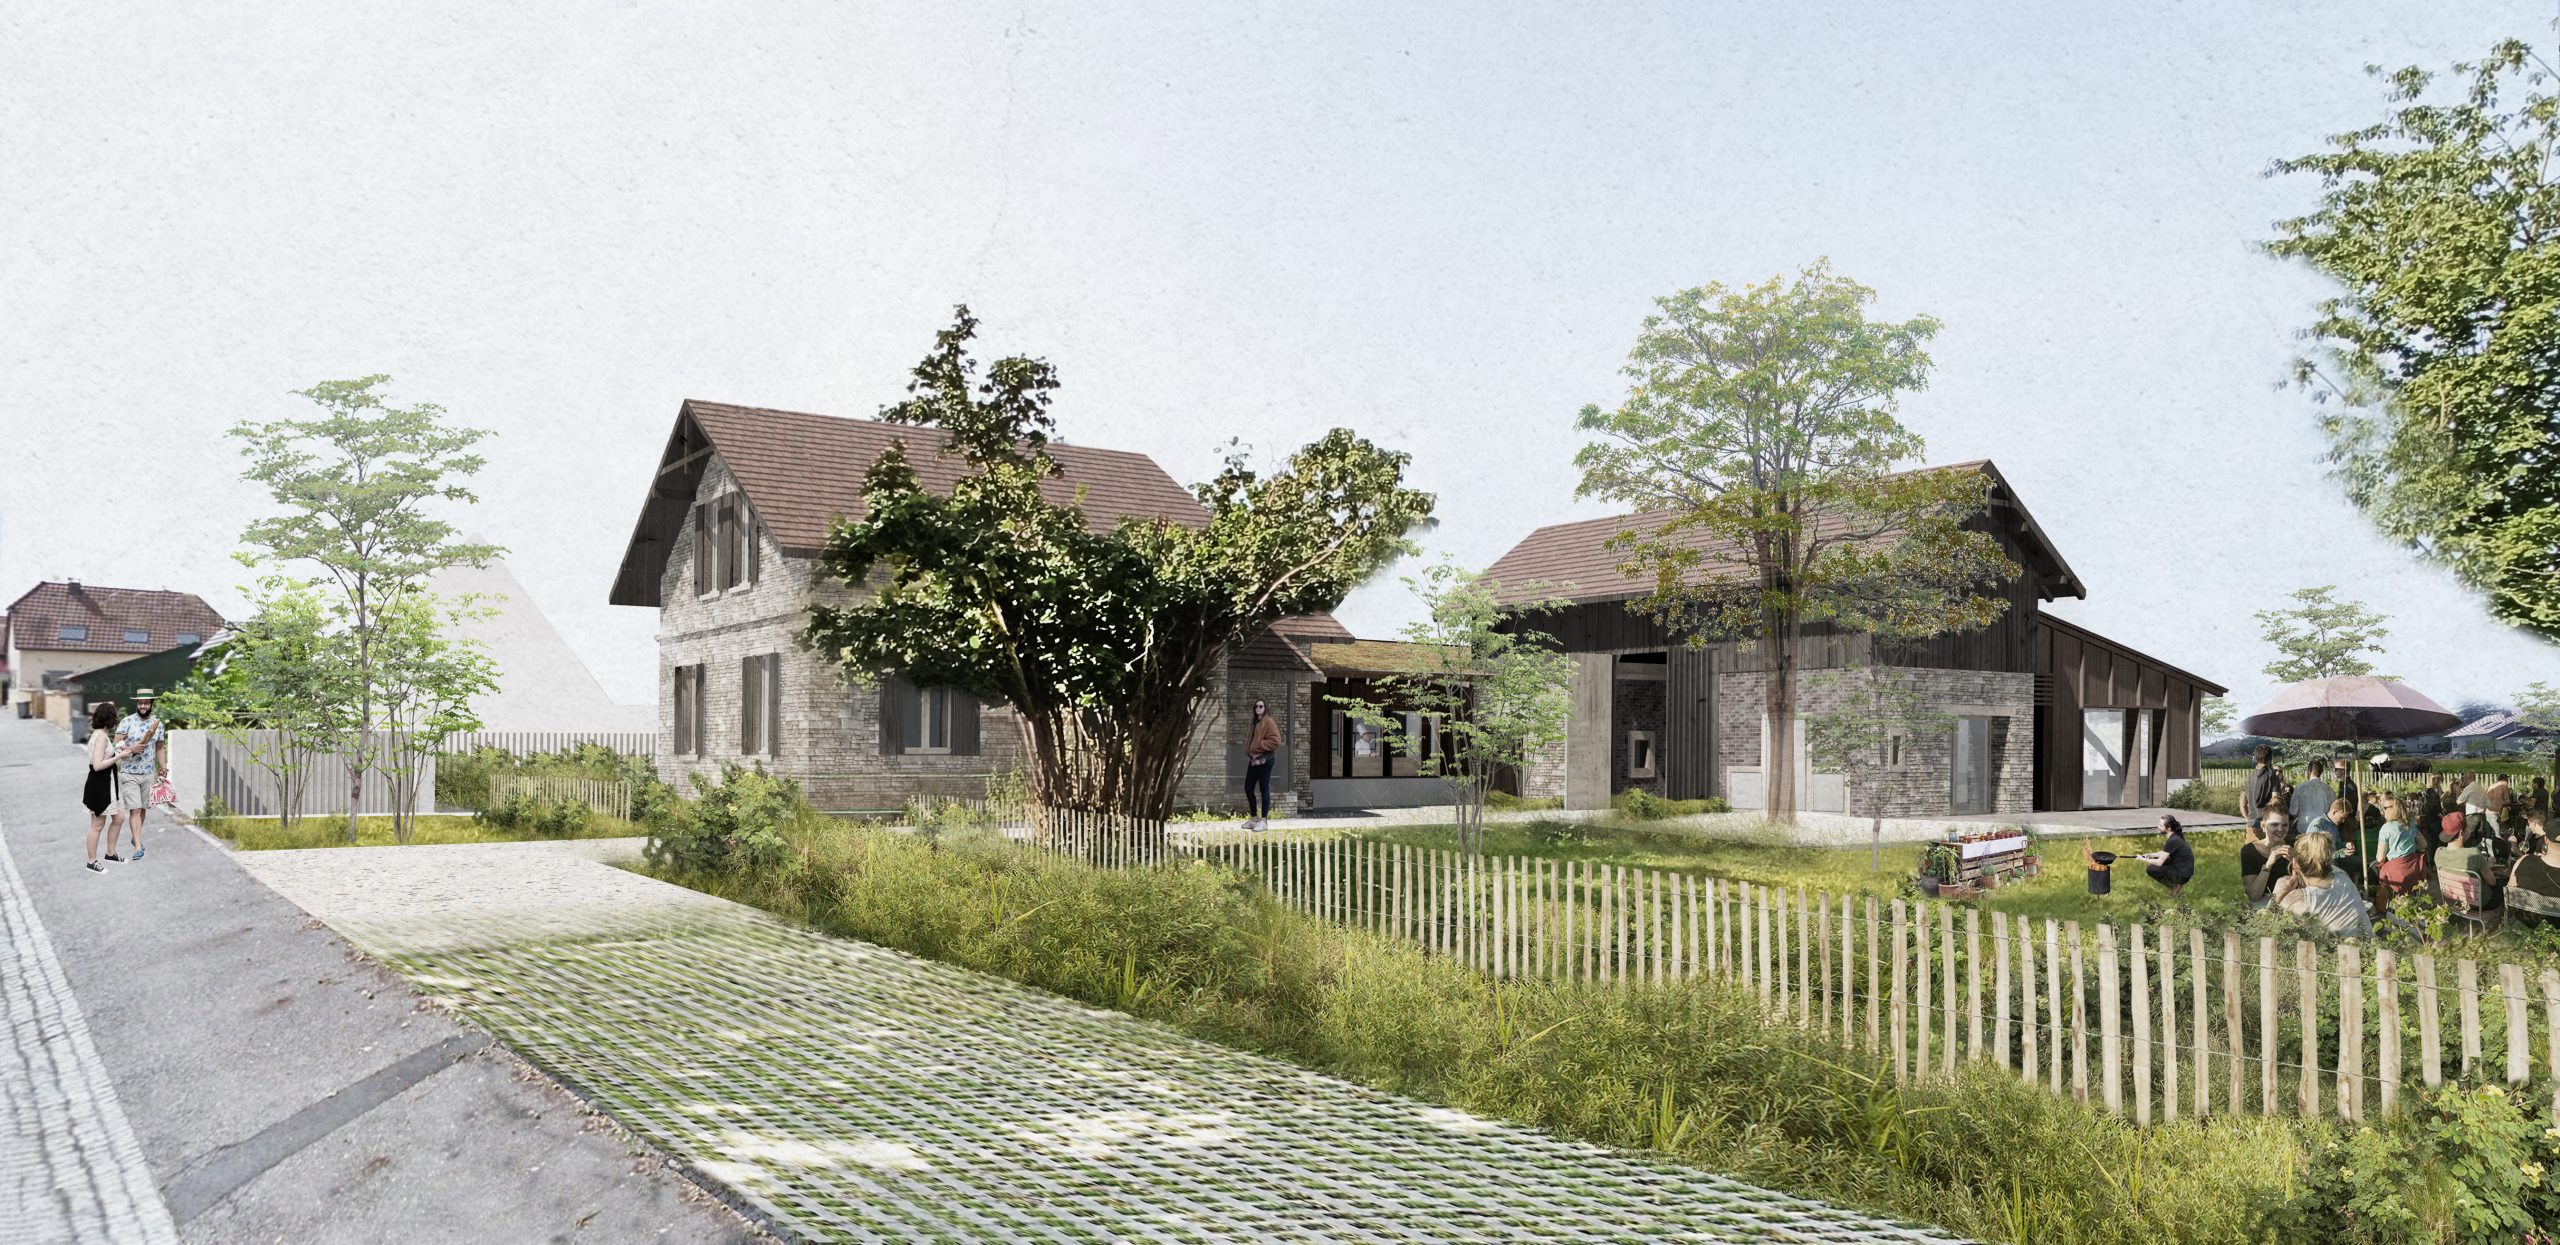 Restructuration et extension de l'ancienne maison forestière de Hombourg en restaurant - Vue depuis la rue (c)BUOB Architecte